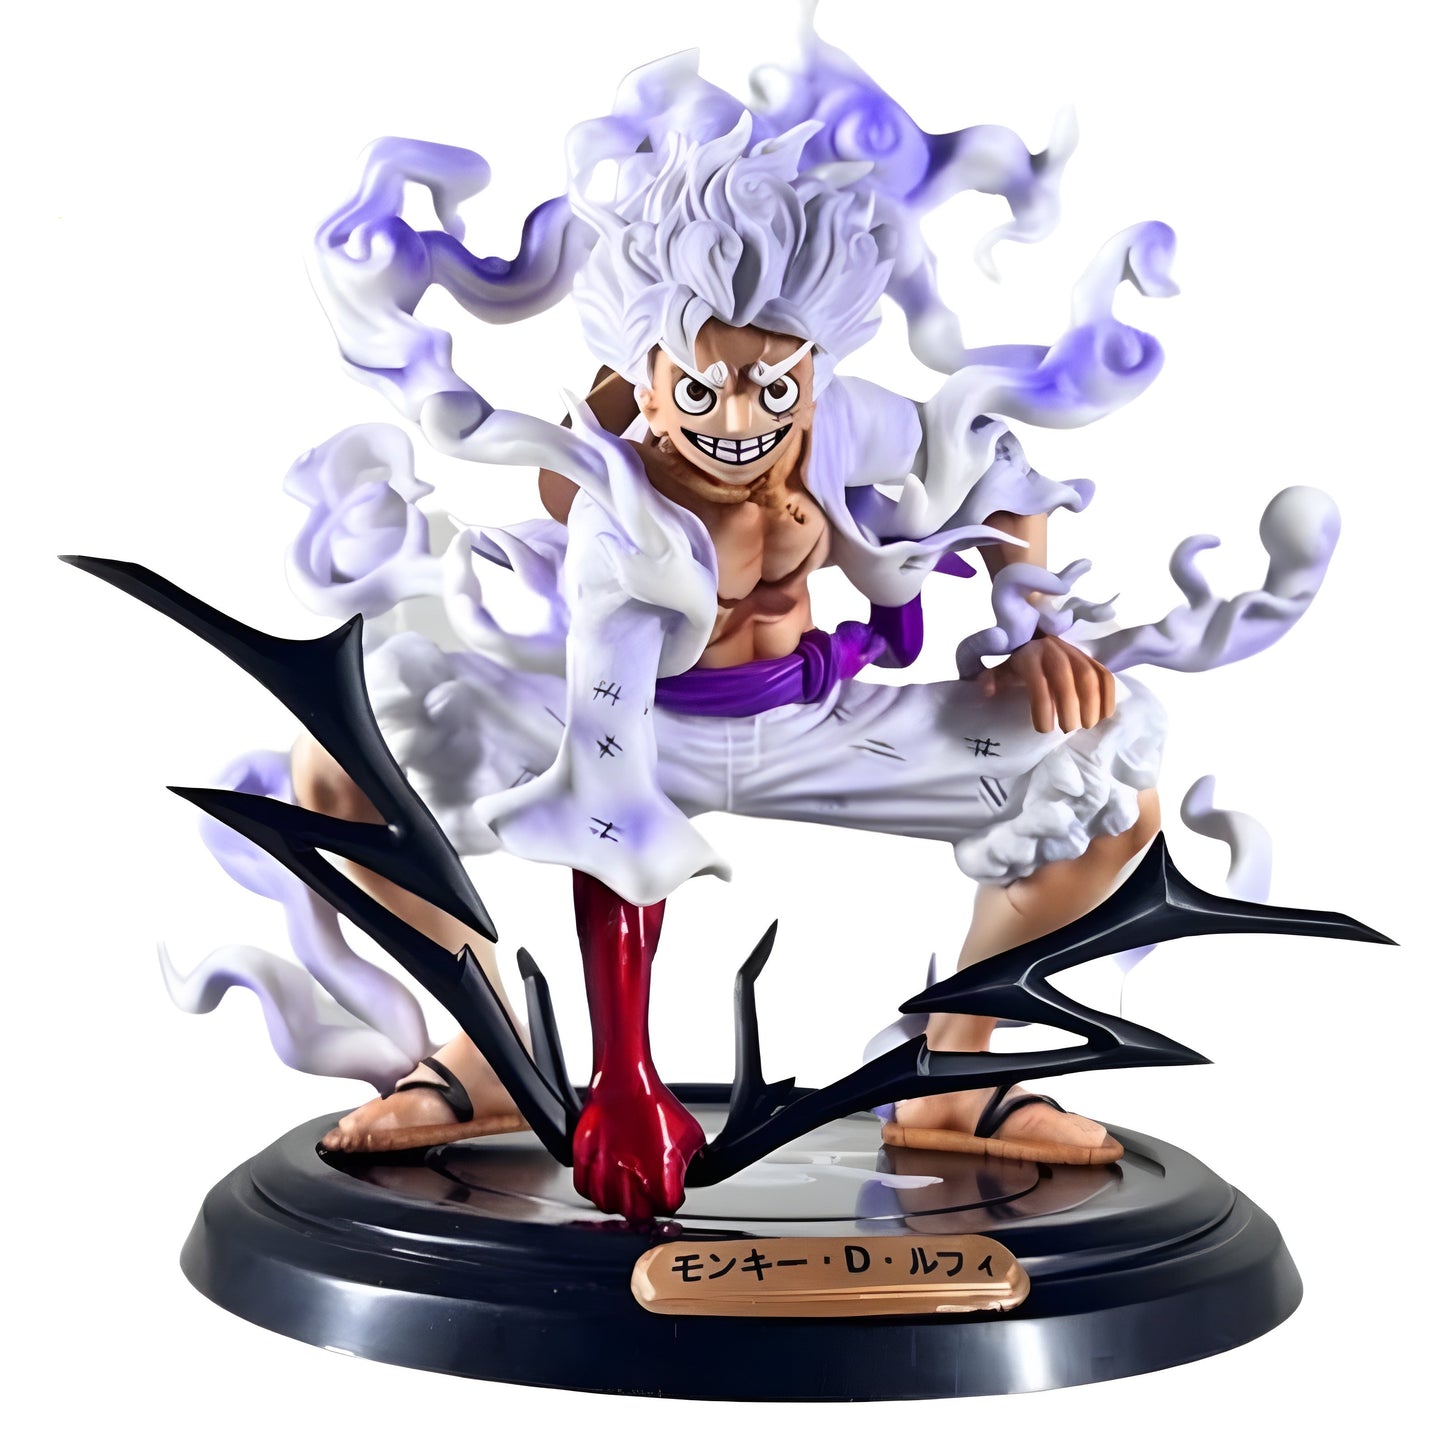 Découvrez Monkey D. Luffy dans sa forme ultime, le Gear 5, avec cette figurine haut de gamme de 20 cm inspirée du manga épique One Piece.